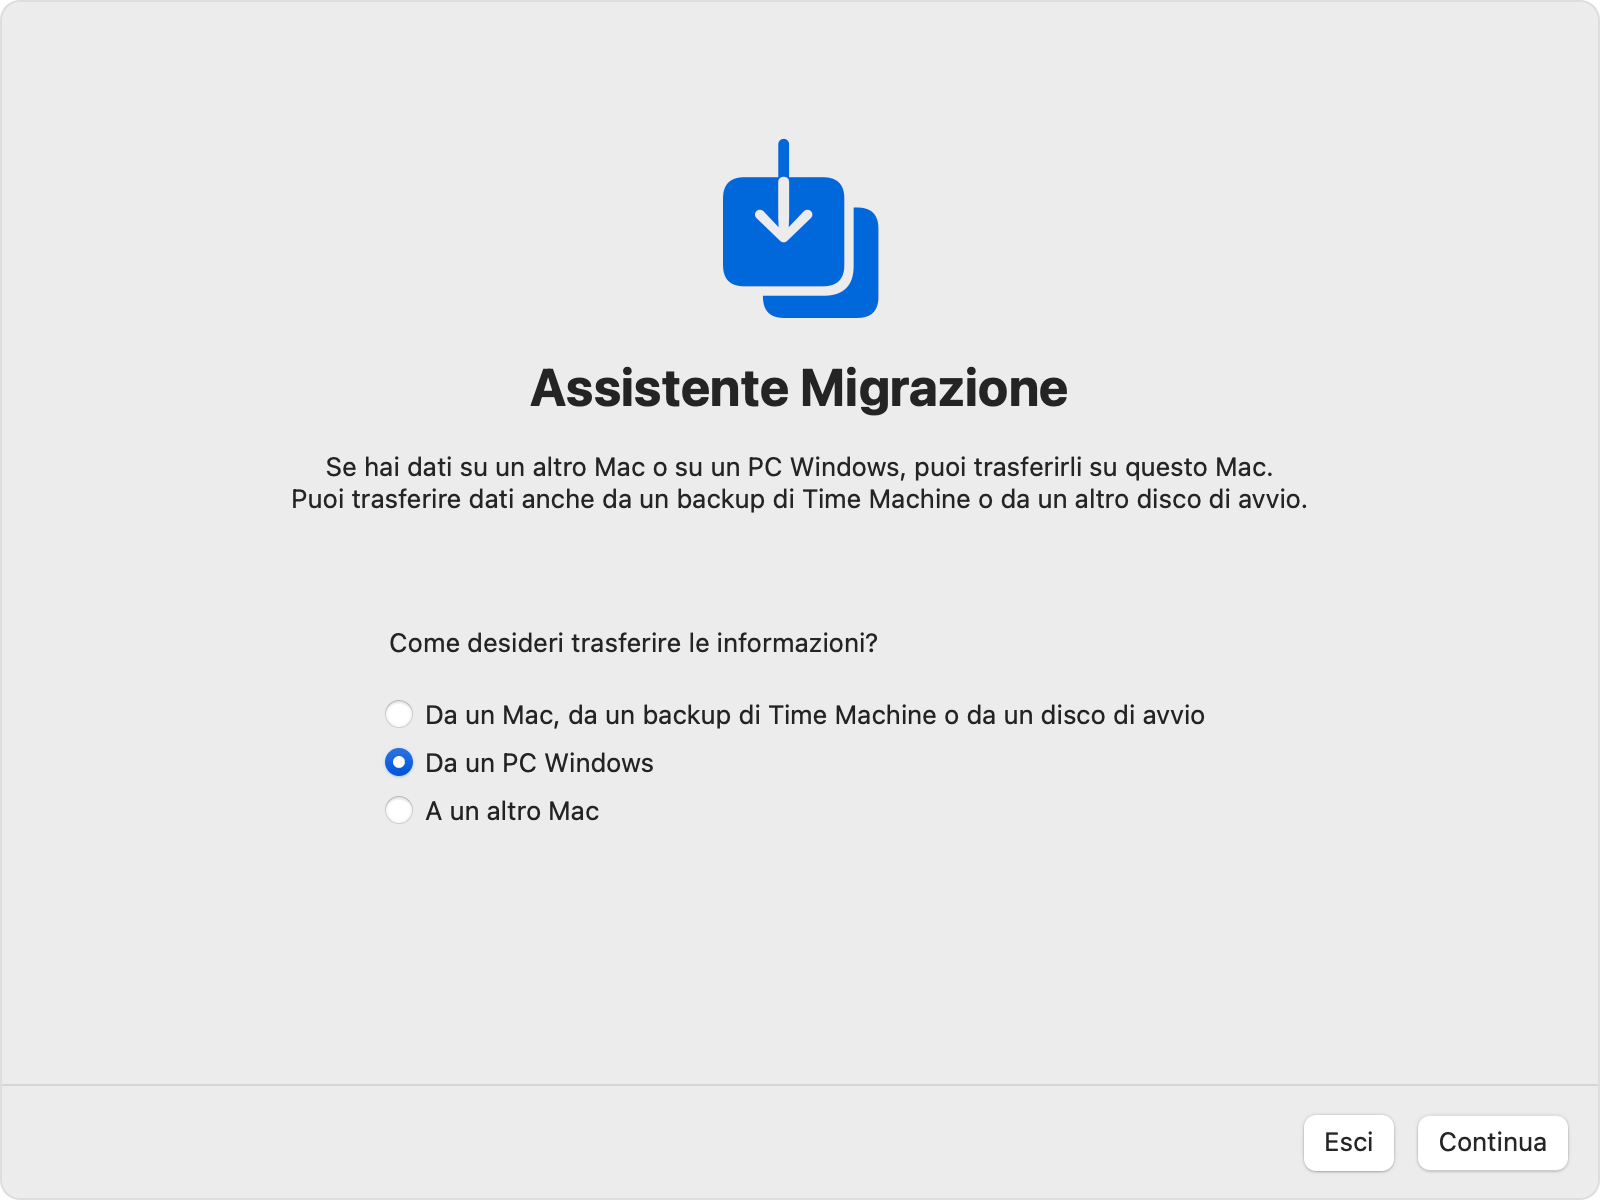 Assistente Migrazione su Mac: trasferisci “Da un PC Windows”